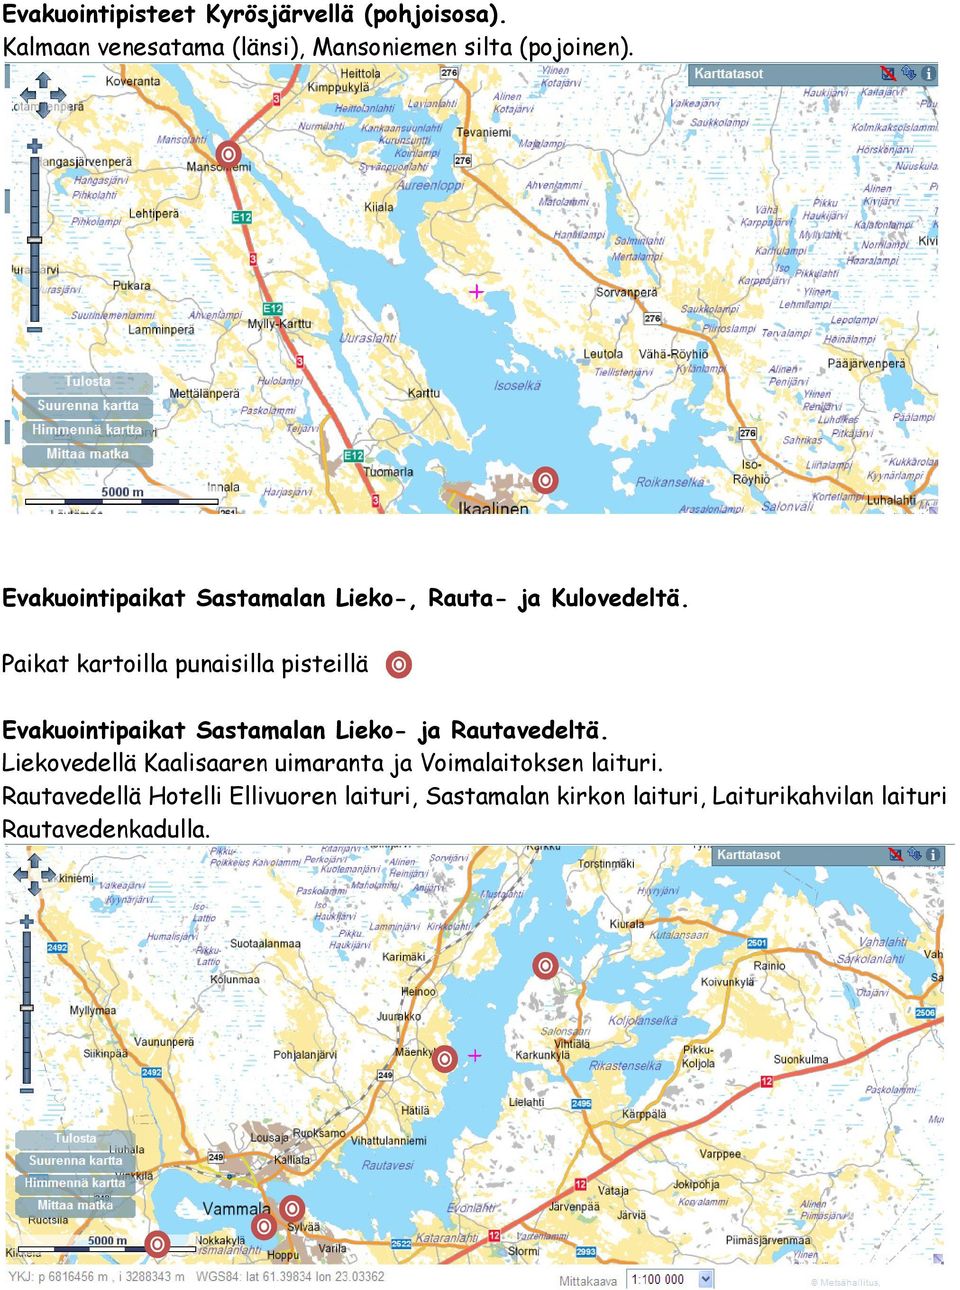 Paikat kartoilla punaisilla pisteillä Evakuointipaikat Sastamalan Lieko- ja Rautavedeltä.